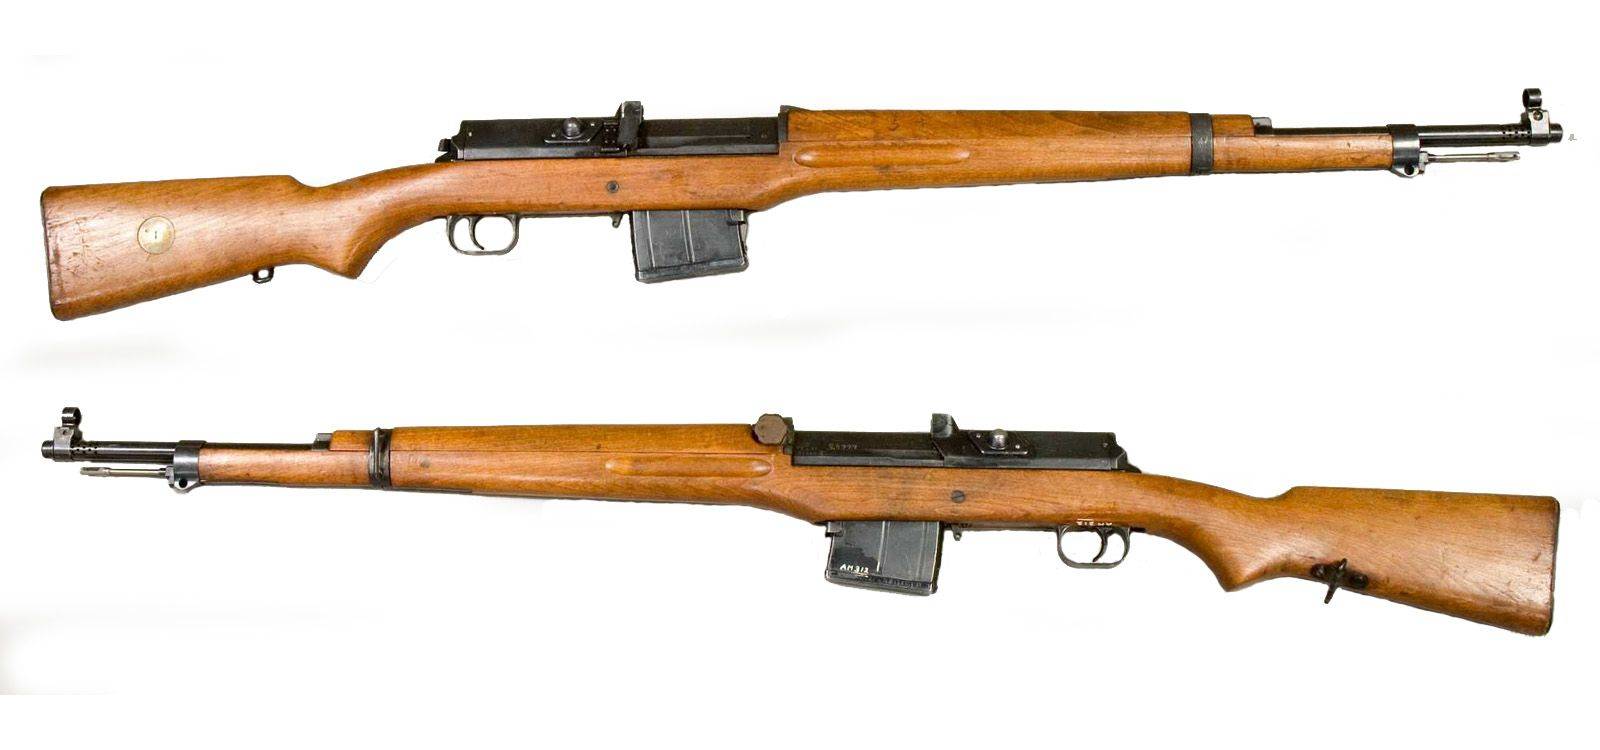 Самозарядная винтовка Meunier A6 M1916